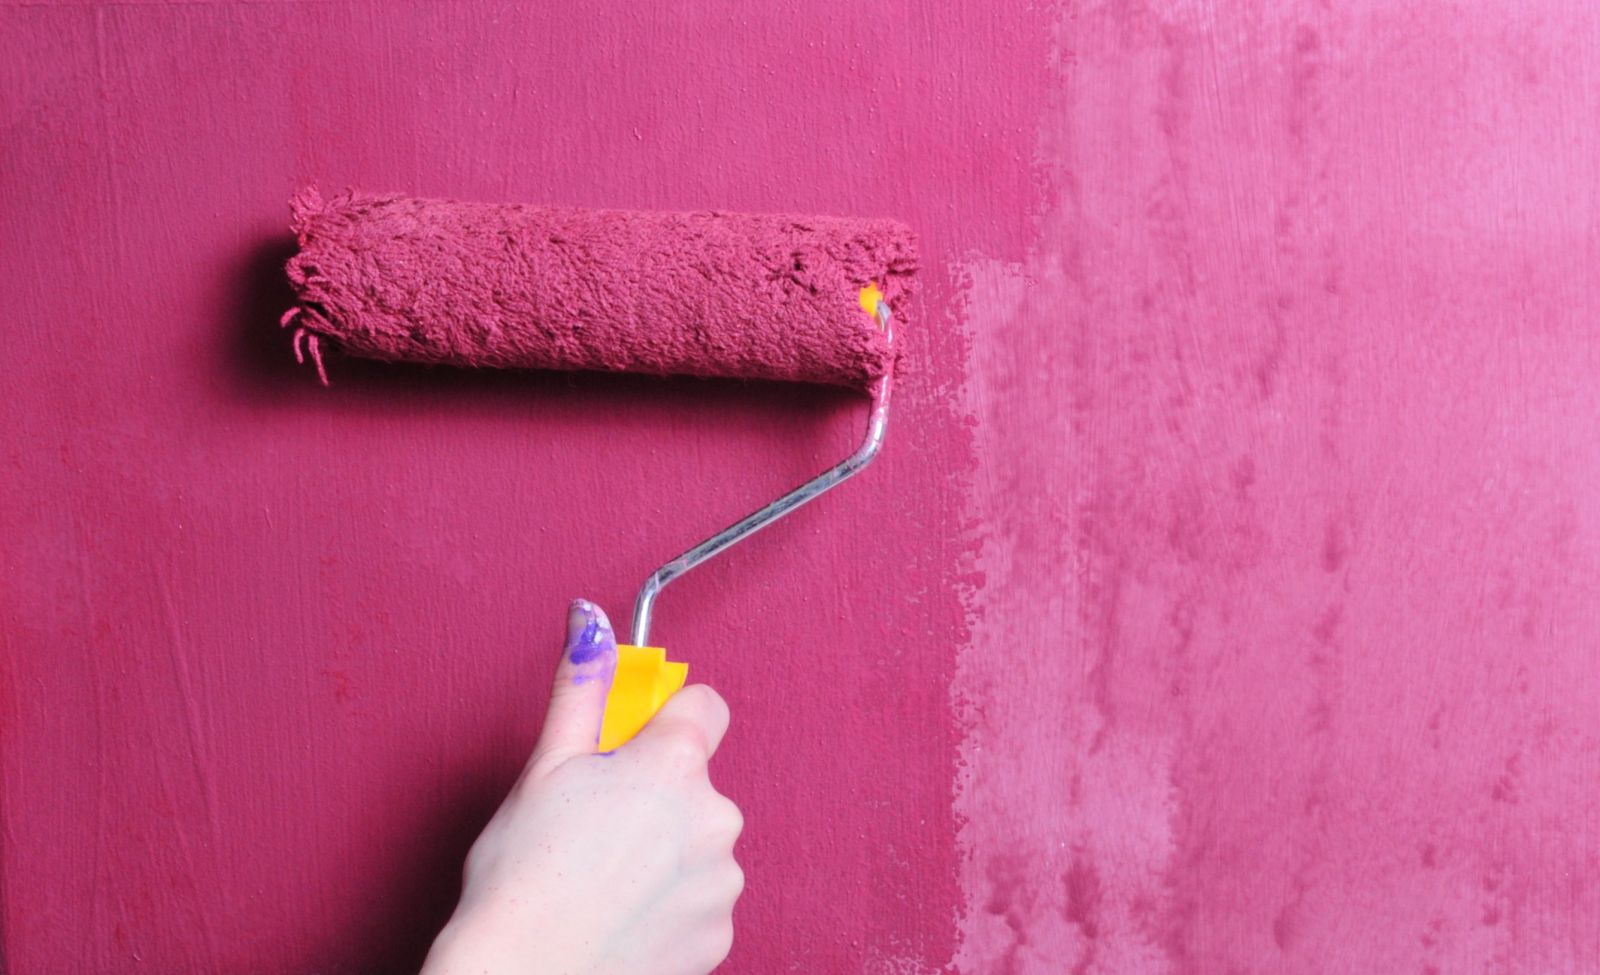 Покраска стен или обои - что лучше выбрать для квартиры (фото, отзывы)